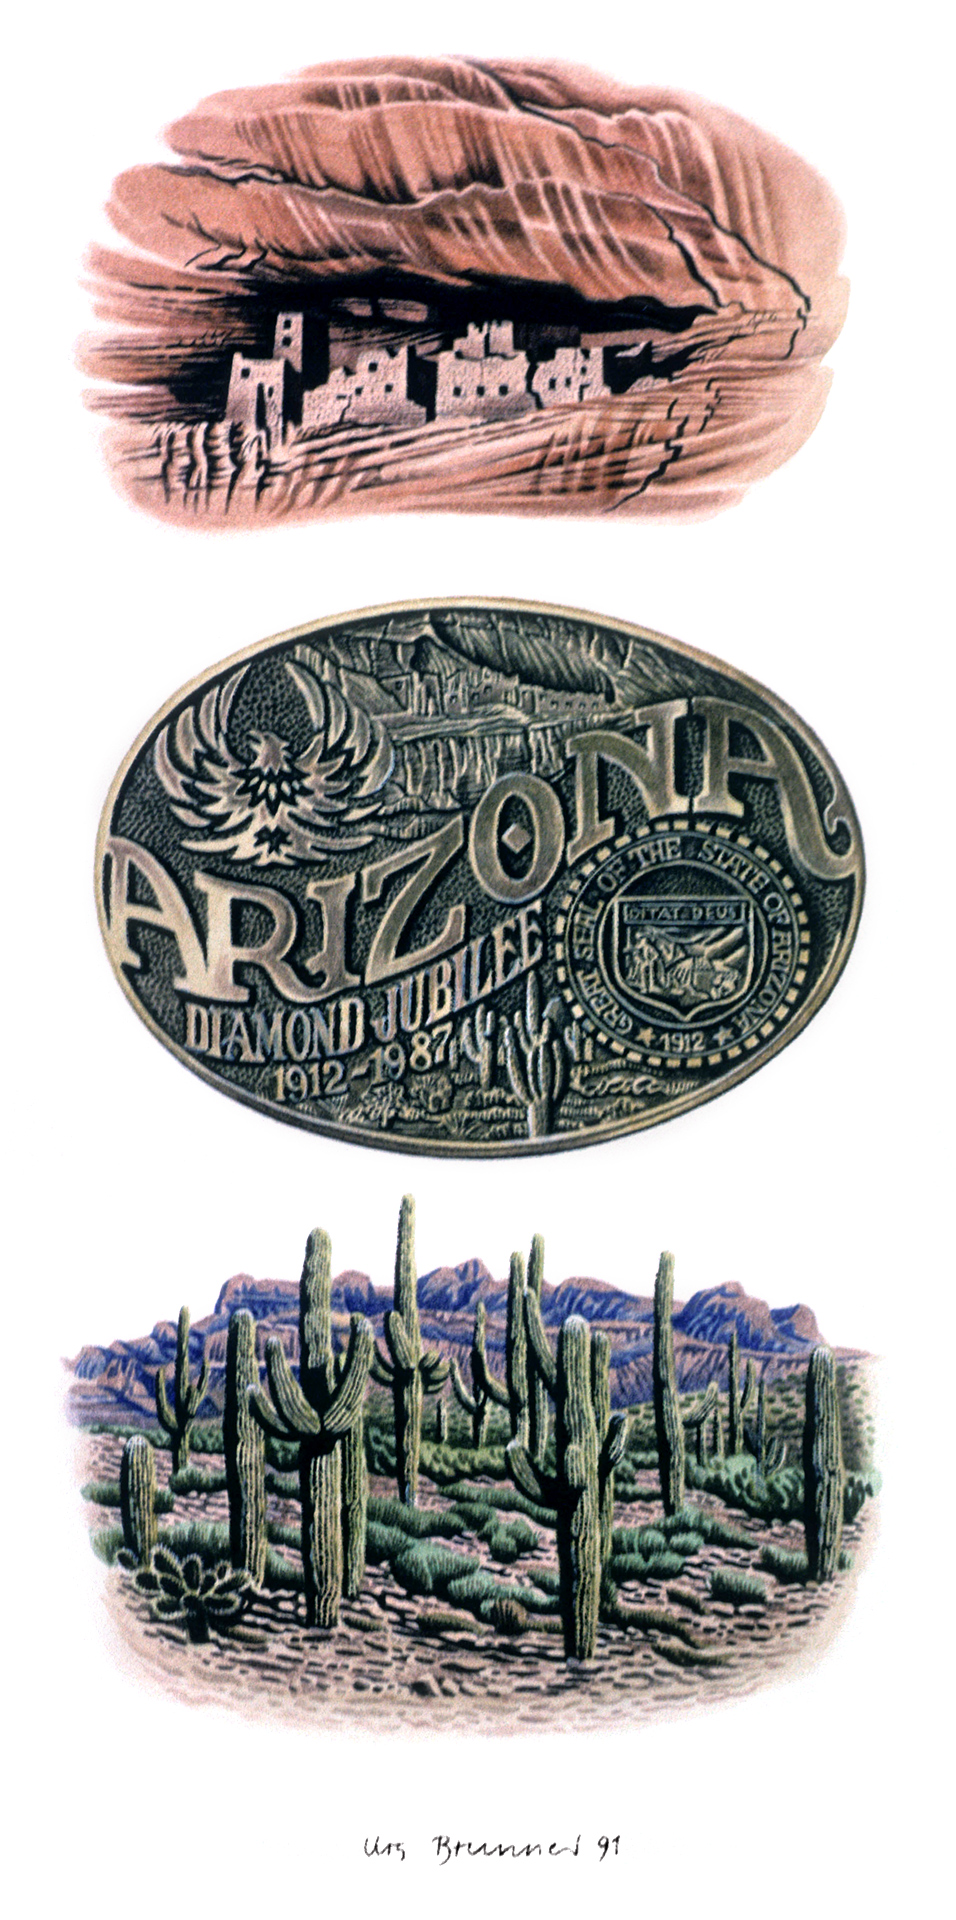 Arizona-Gurtschnalle, 1991, Aquarell auf Papier, 21 x 29,7 cm